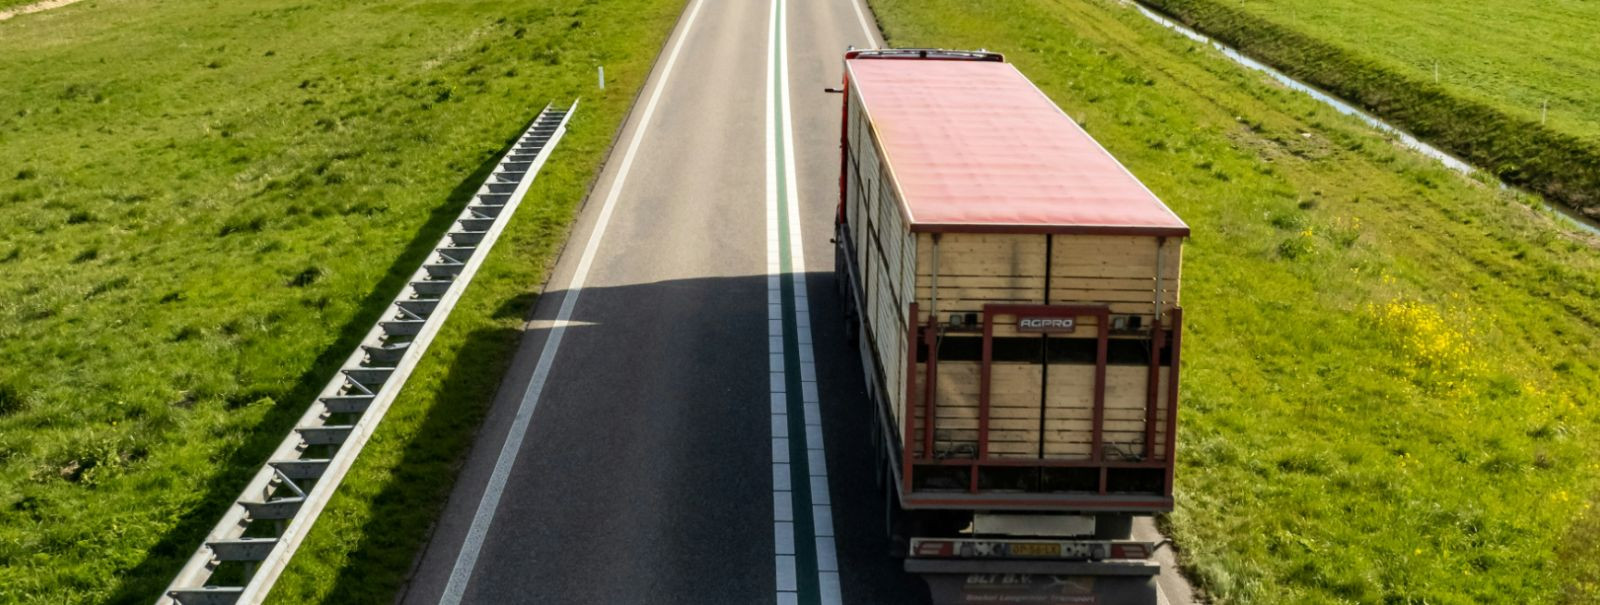 Maanteetransport on kaupade liigutamise protsess maanteedel kasutades mootorsõidukeid. See on logistikaahela kriitiline komponent, mis võimaldab ettevõtetel oma